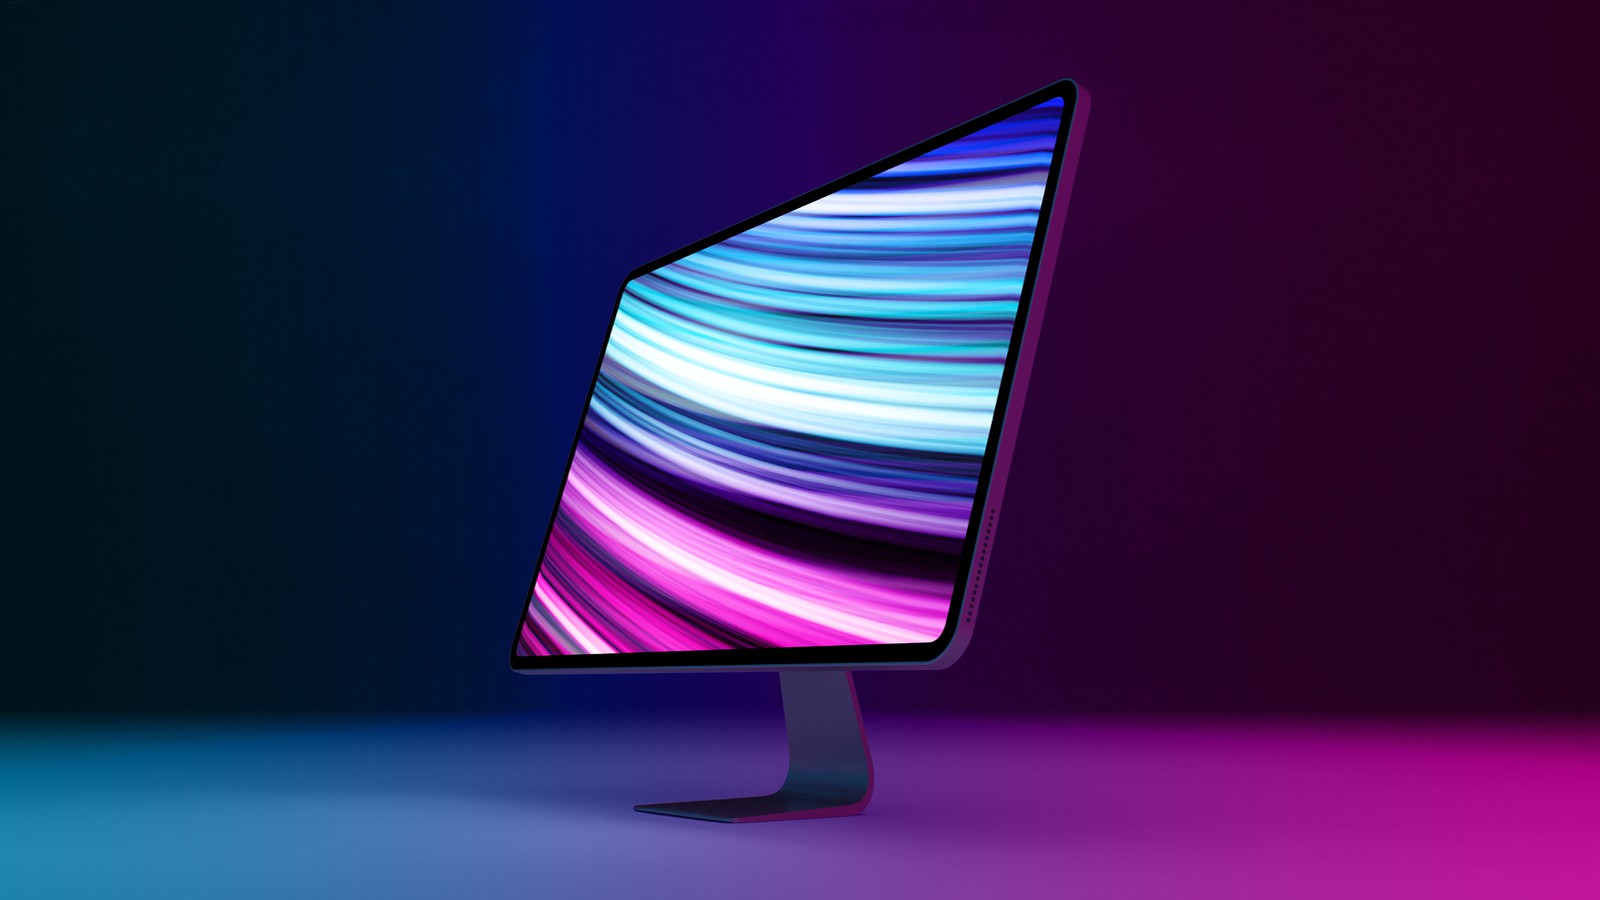 iMac 2021: Thiết kế, cấu hình, giá thành và thời gian ra ...